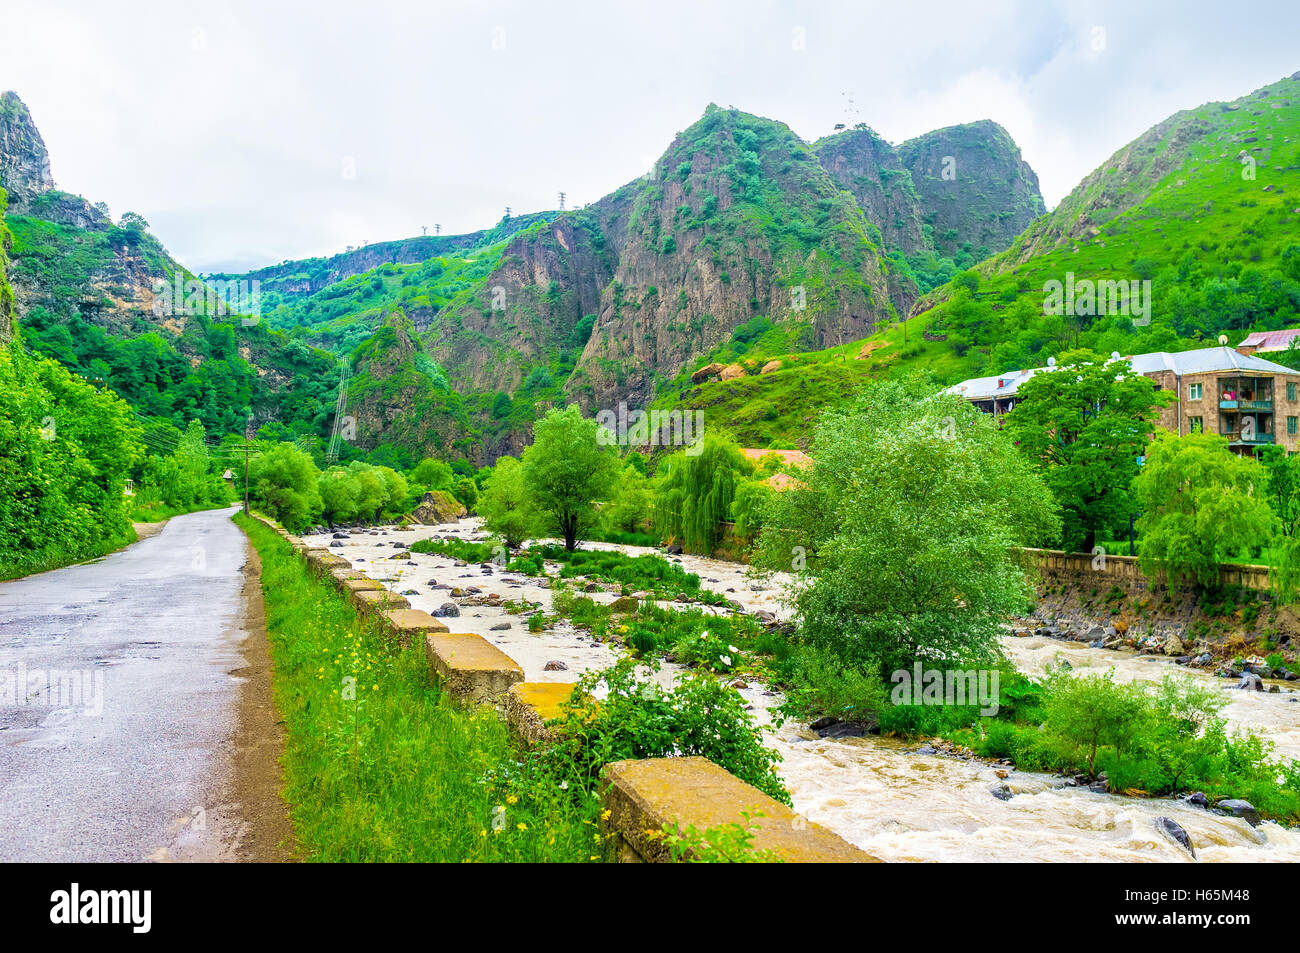 Le Deped rivière entourée de montagnes et de forêts, Dzoraguet, Lori Province, de l'Arménie. Banque D'Images